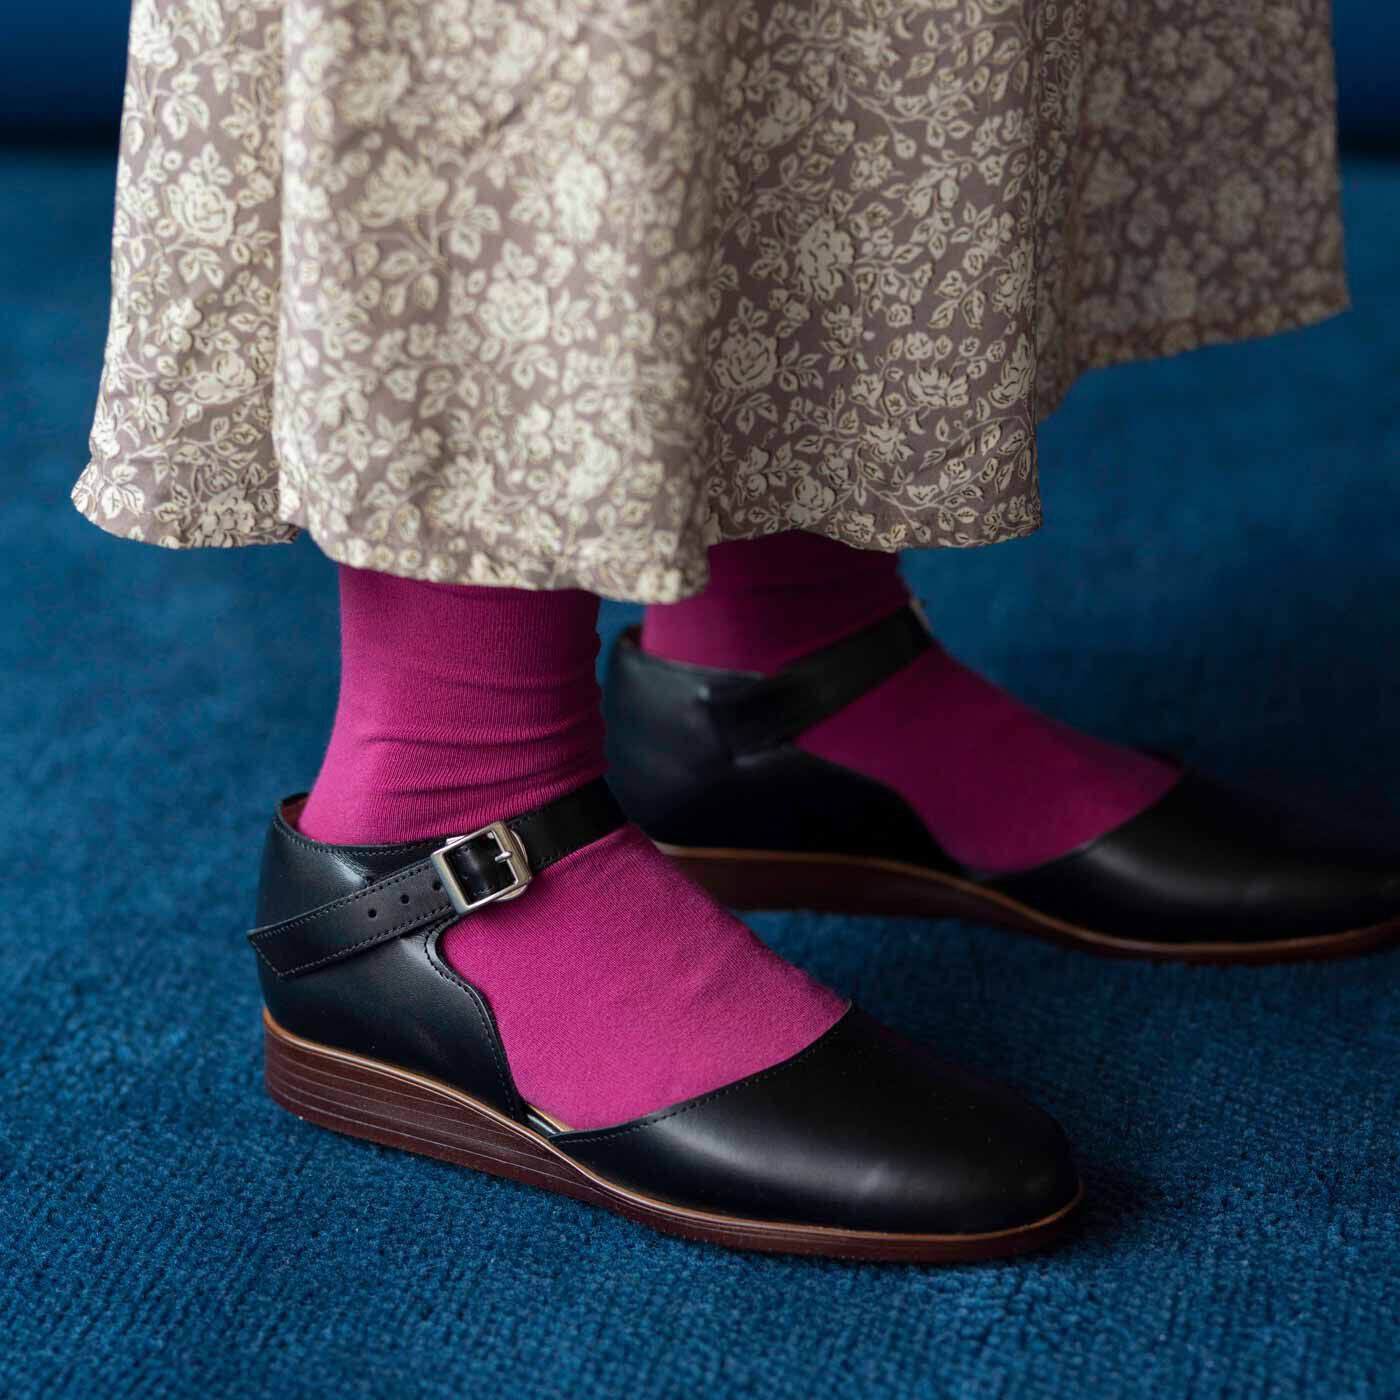 ＆Stories|長田靴職人が叶えた 本革ストラップトウシューズ〈ブラックキャット〉[本革 靴：日本製]|ほっそり華奢な足もとを演出します。ソールは厚みのあるゴム製で、歩きやすさもばっちり。